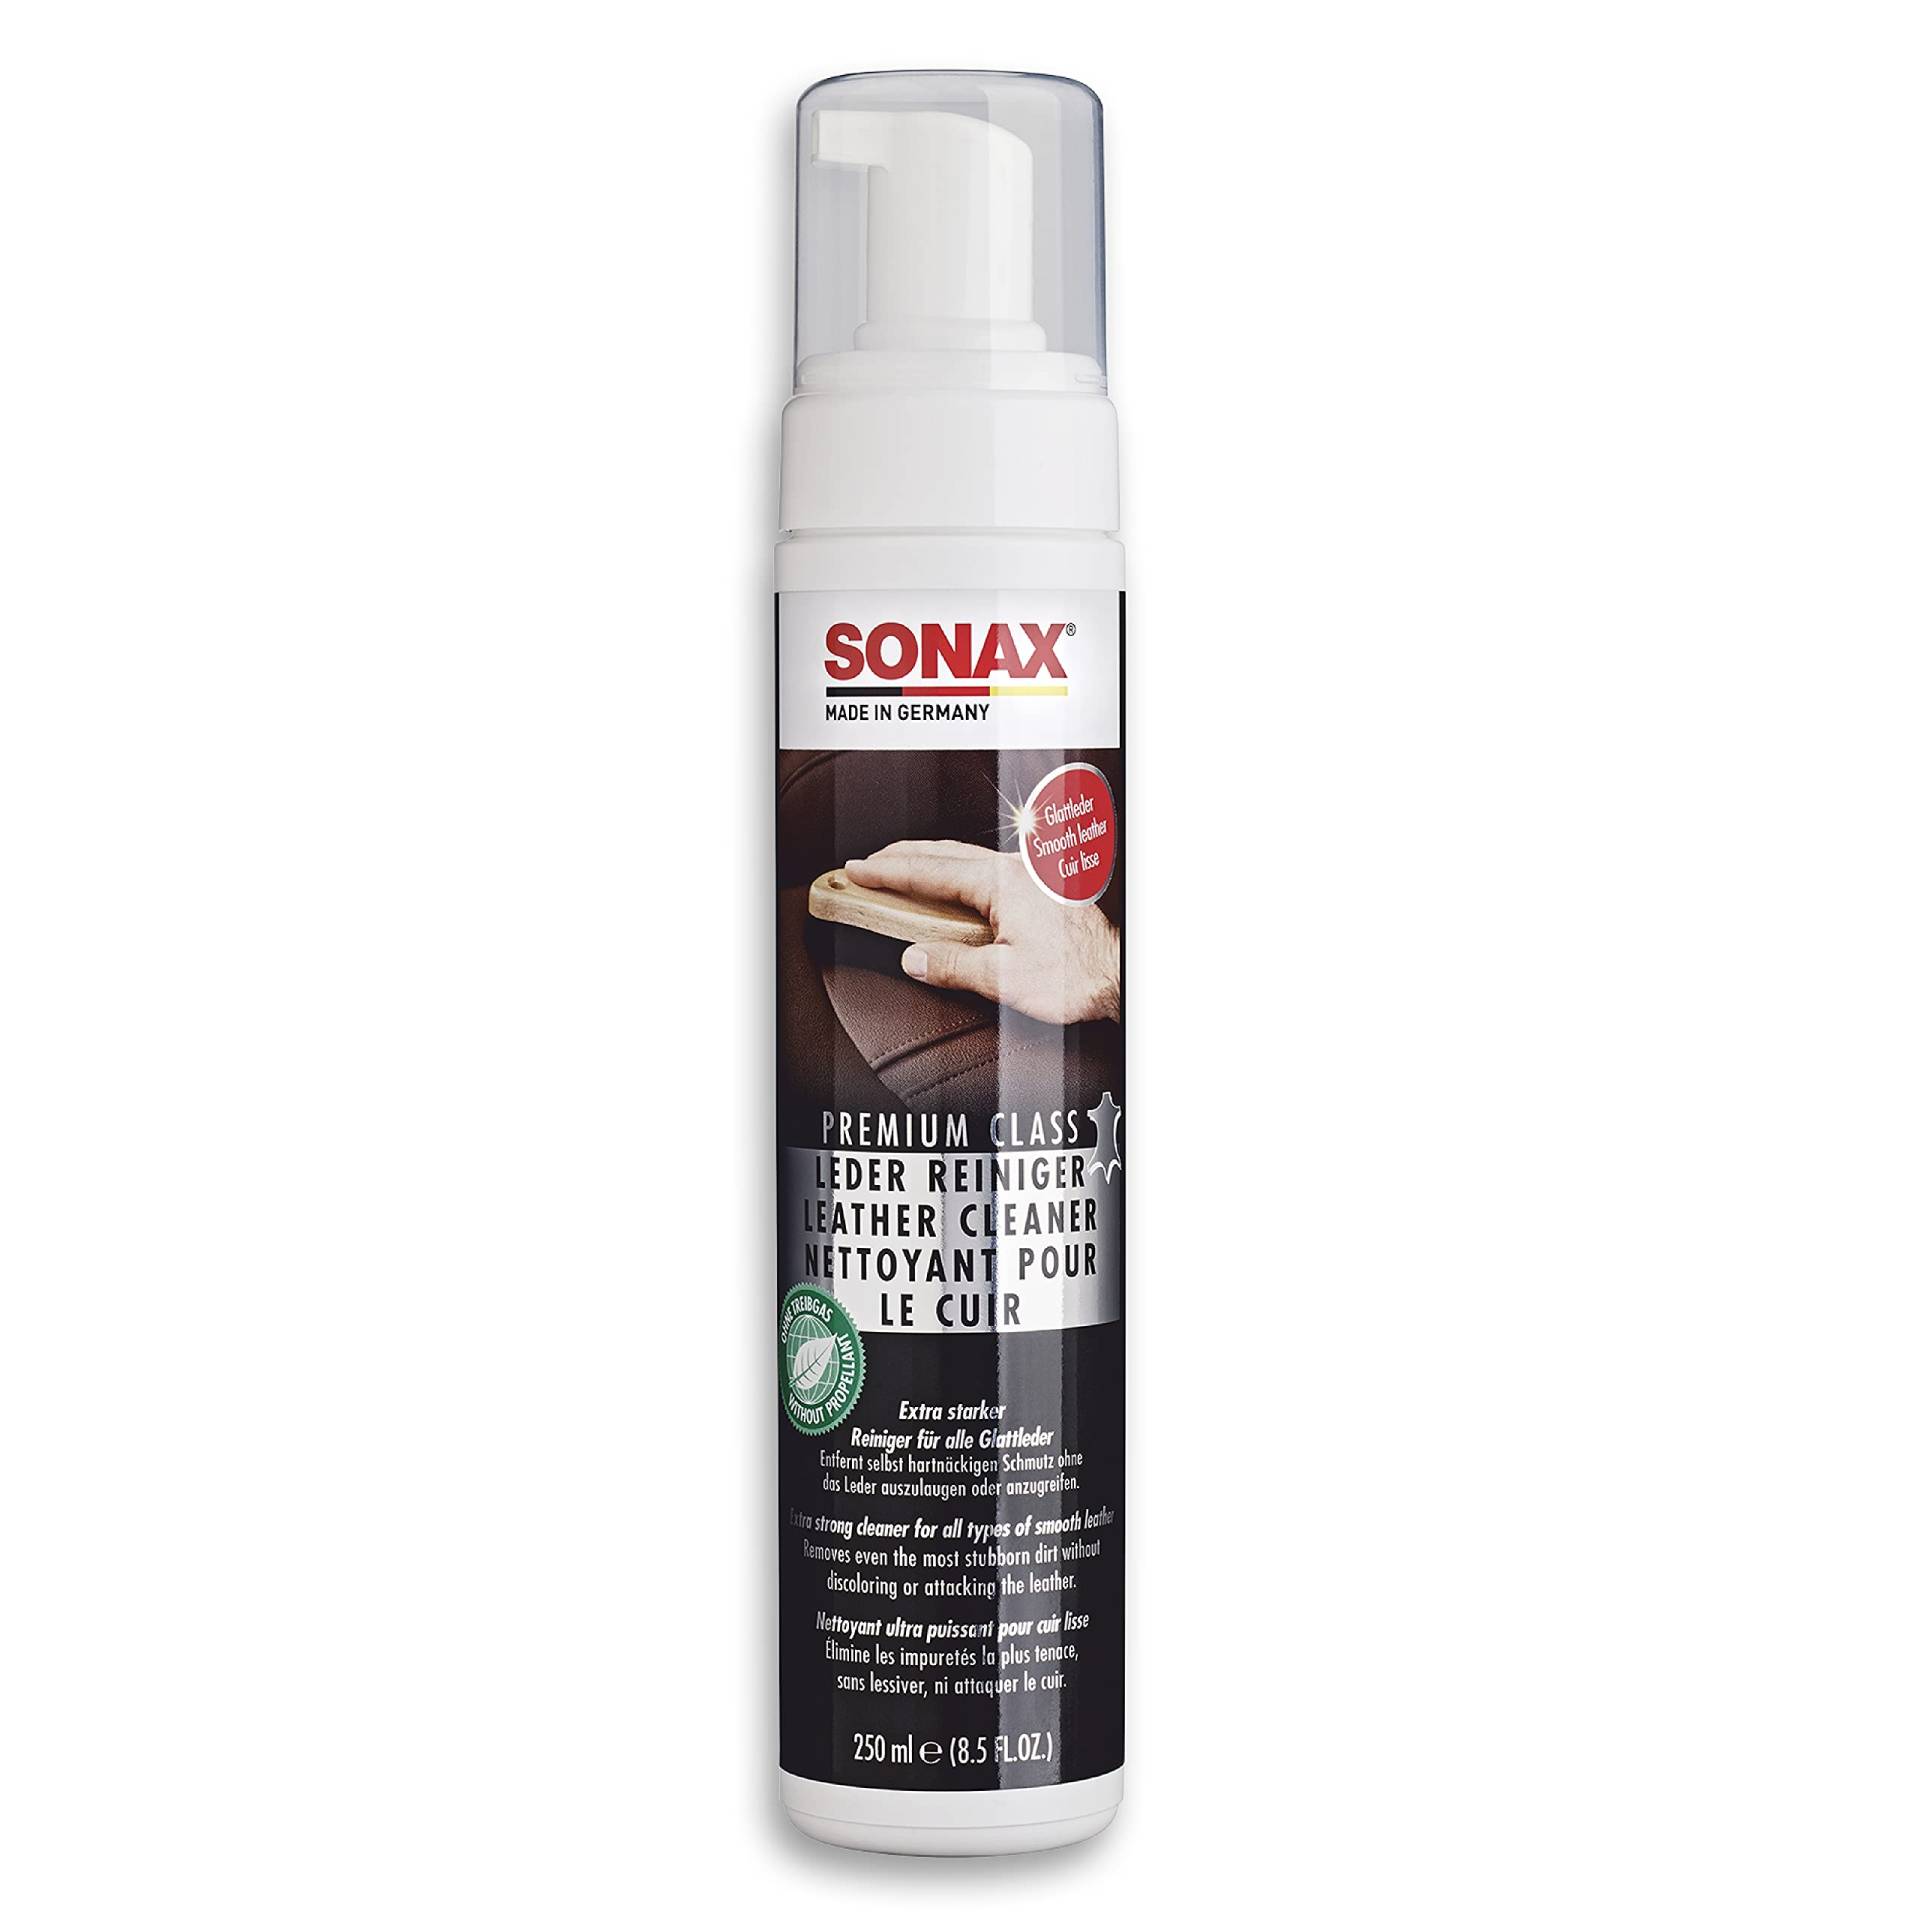 SONAX PremiumClass LederReiniger (250 ml) effektive und schnelle Reinigung für Glattleder ohne anzugreifen | Art-Nr. 02811410 von SONAX